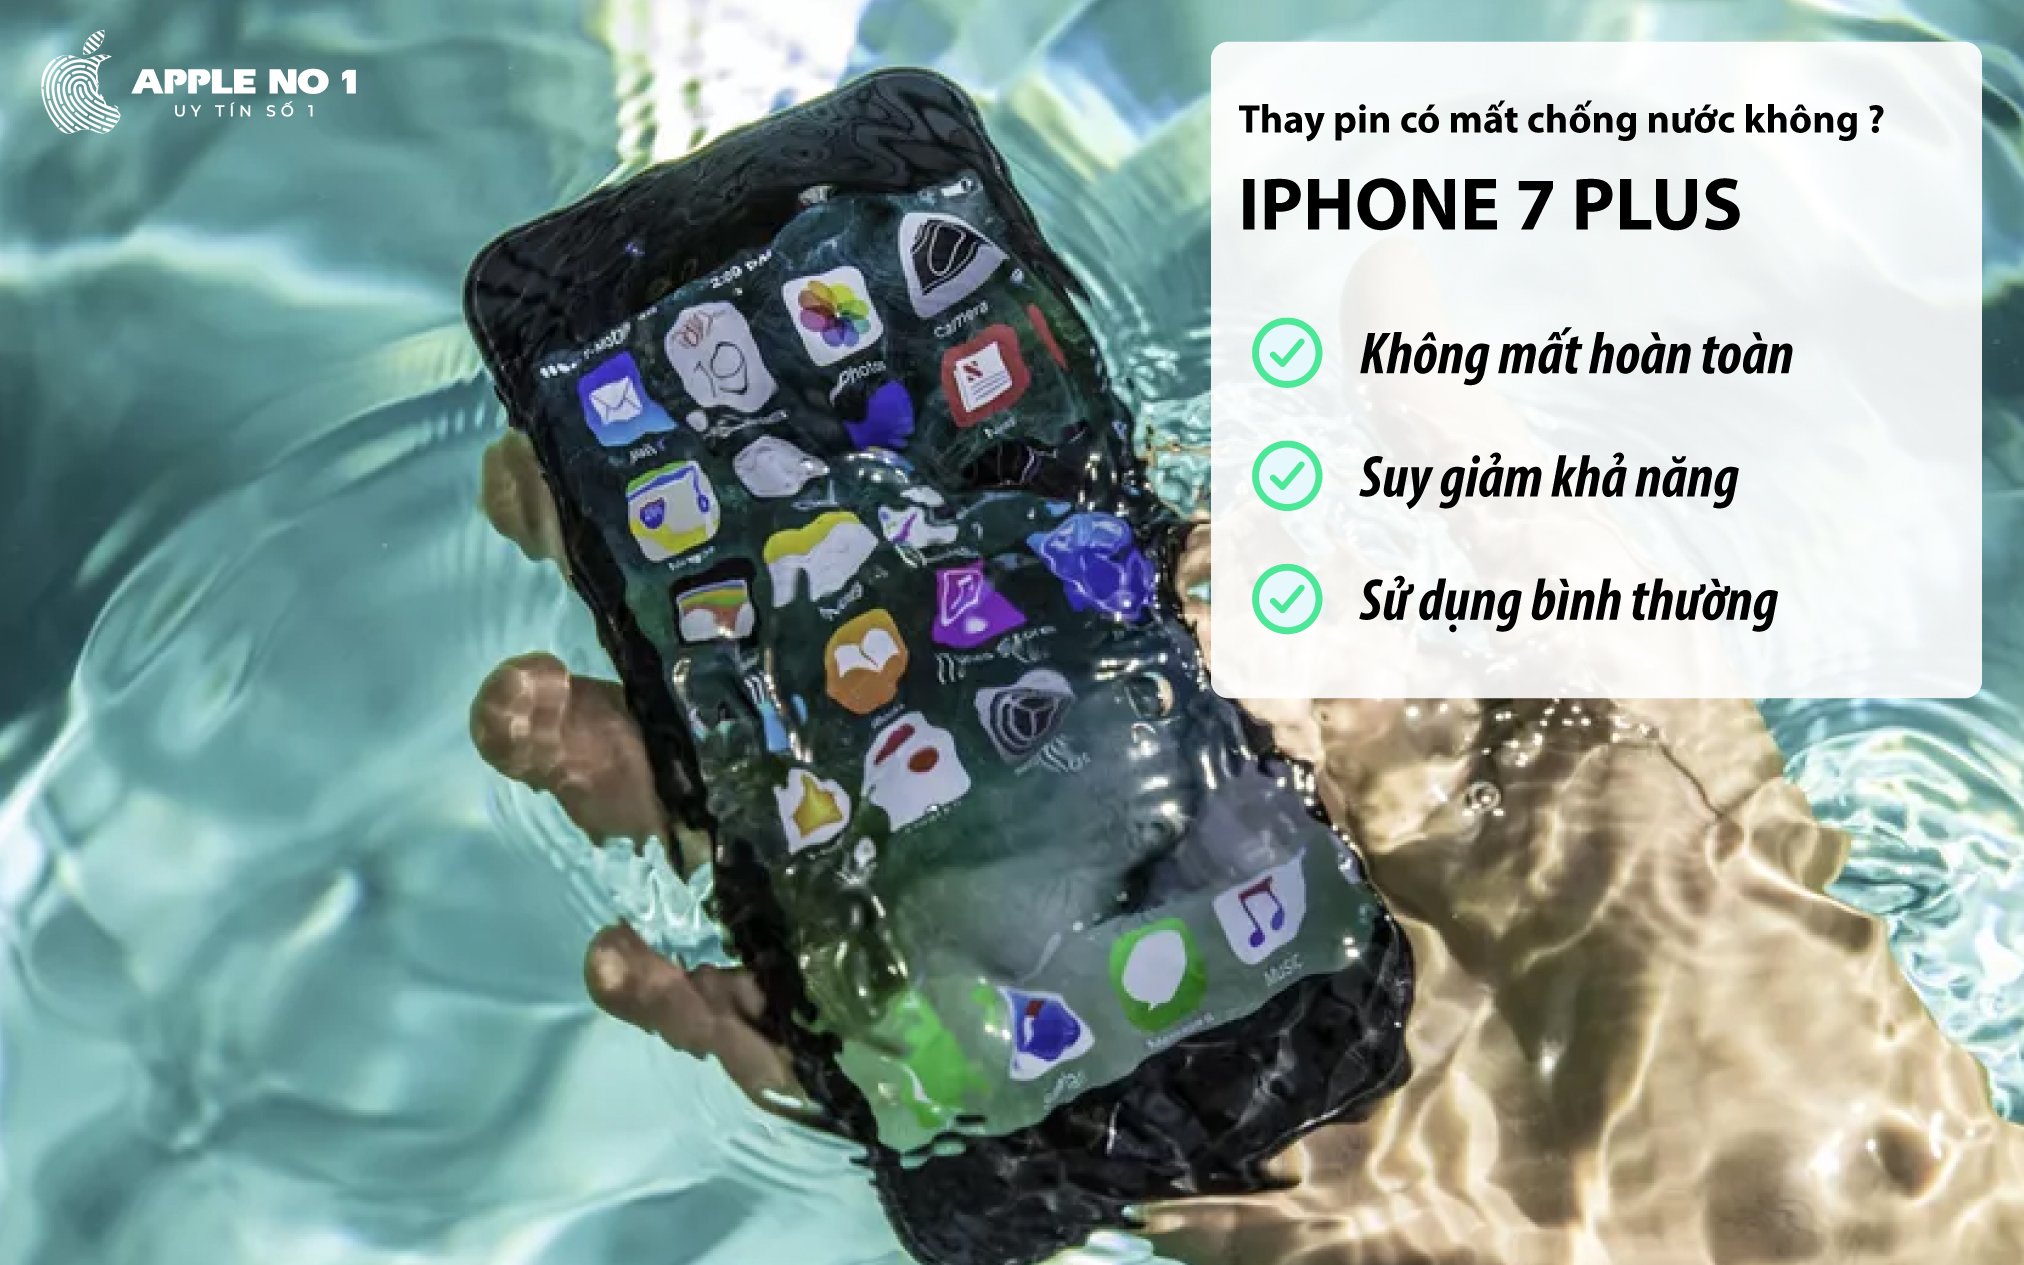 thay pin iphone 7 plus không làm mất hoàn toàn khả năng chống nước